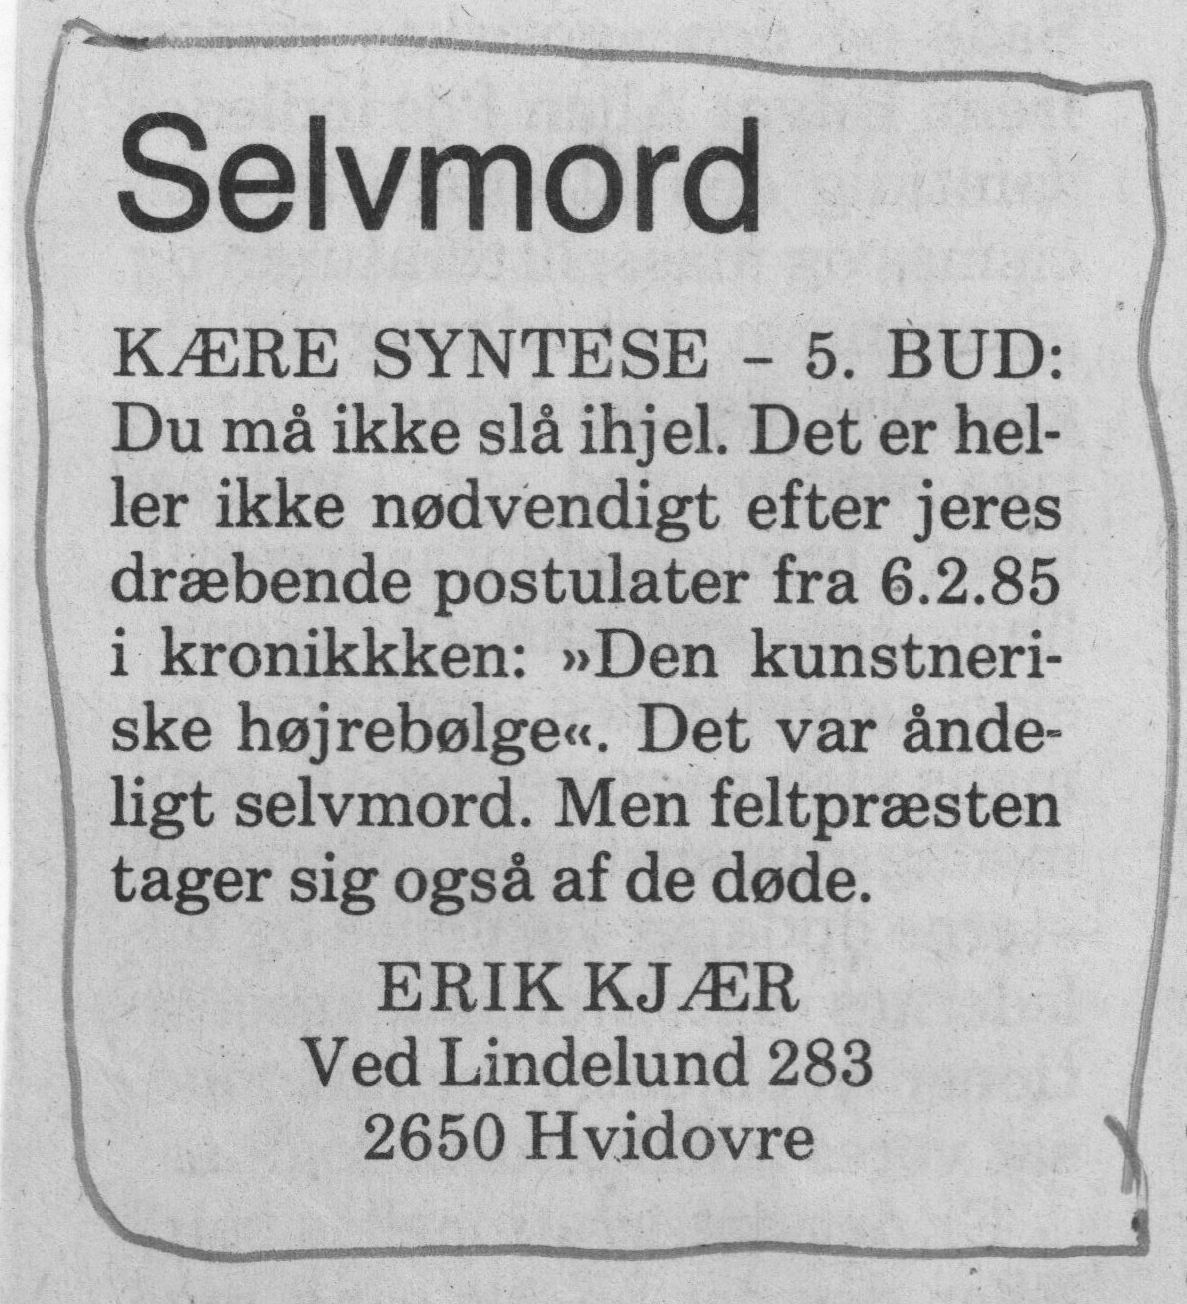 Selvmord. Debatindlæg (Den kunstneriske højrebølge). Erik Kjær. Information. Medio februar 1985.